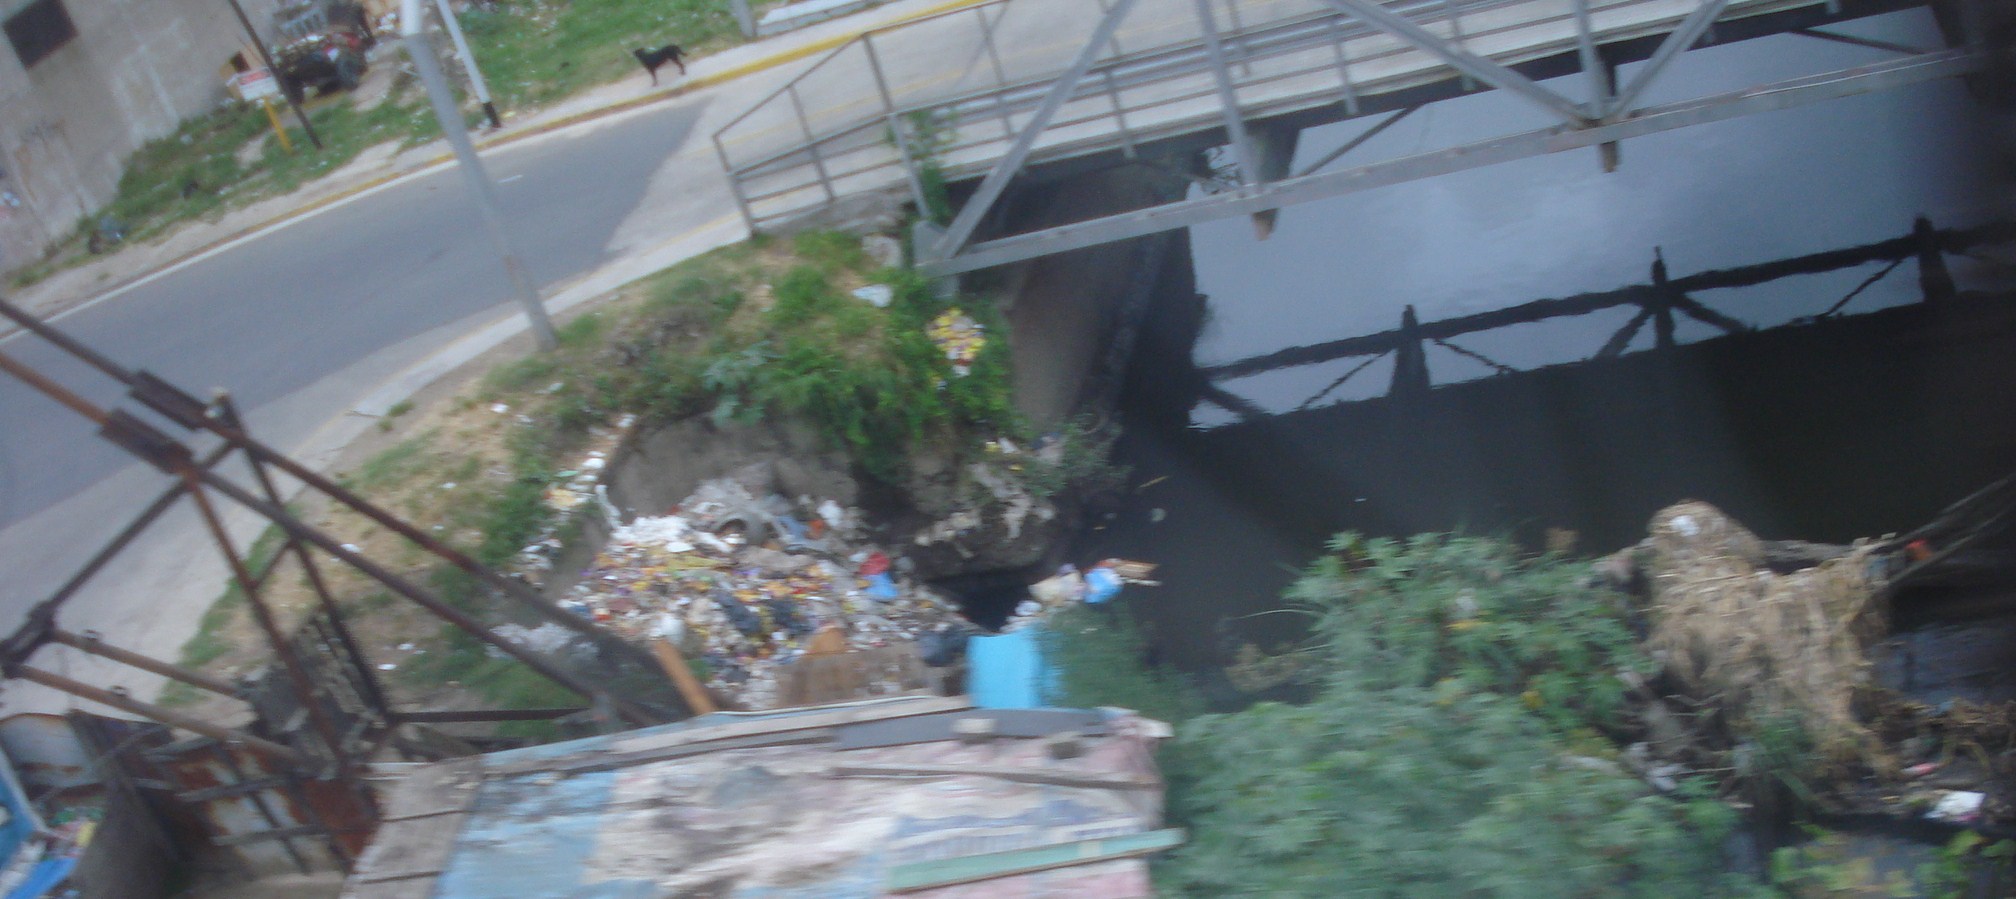 Contaminacion Ambiental En Puerto Rico 2010